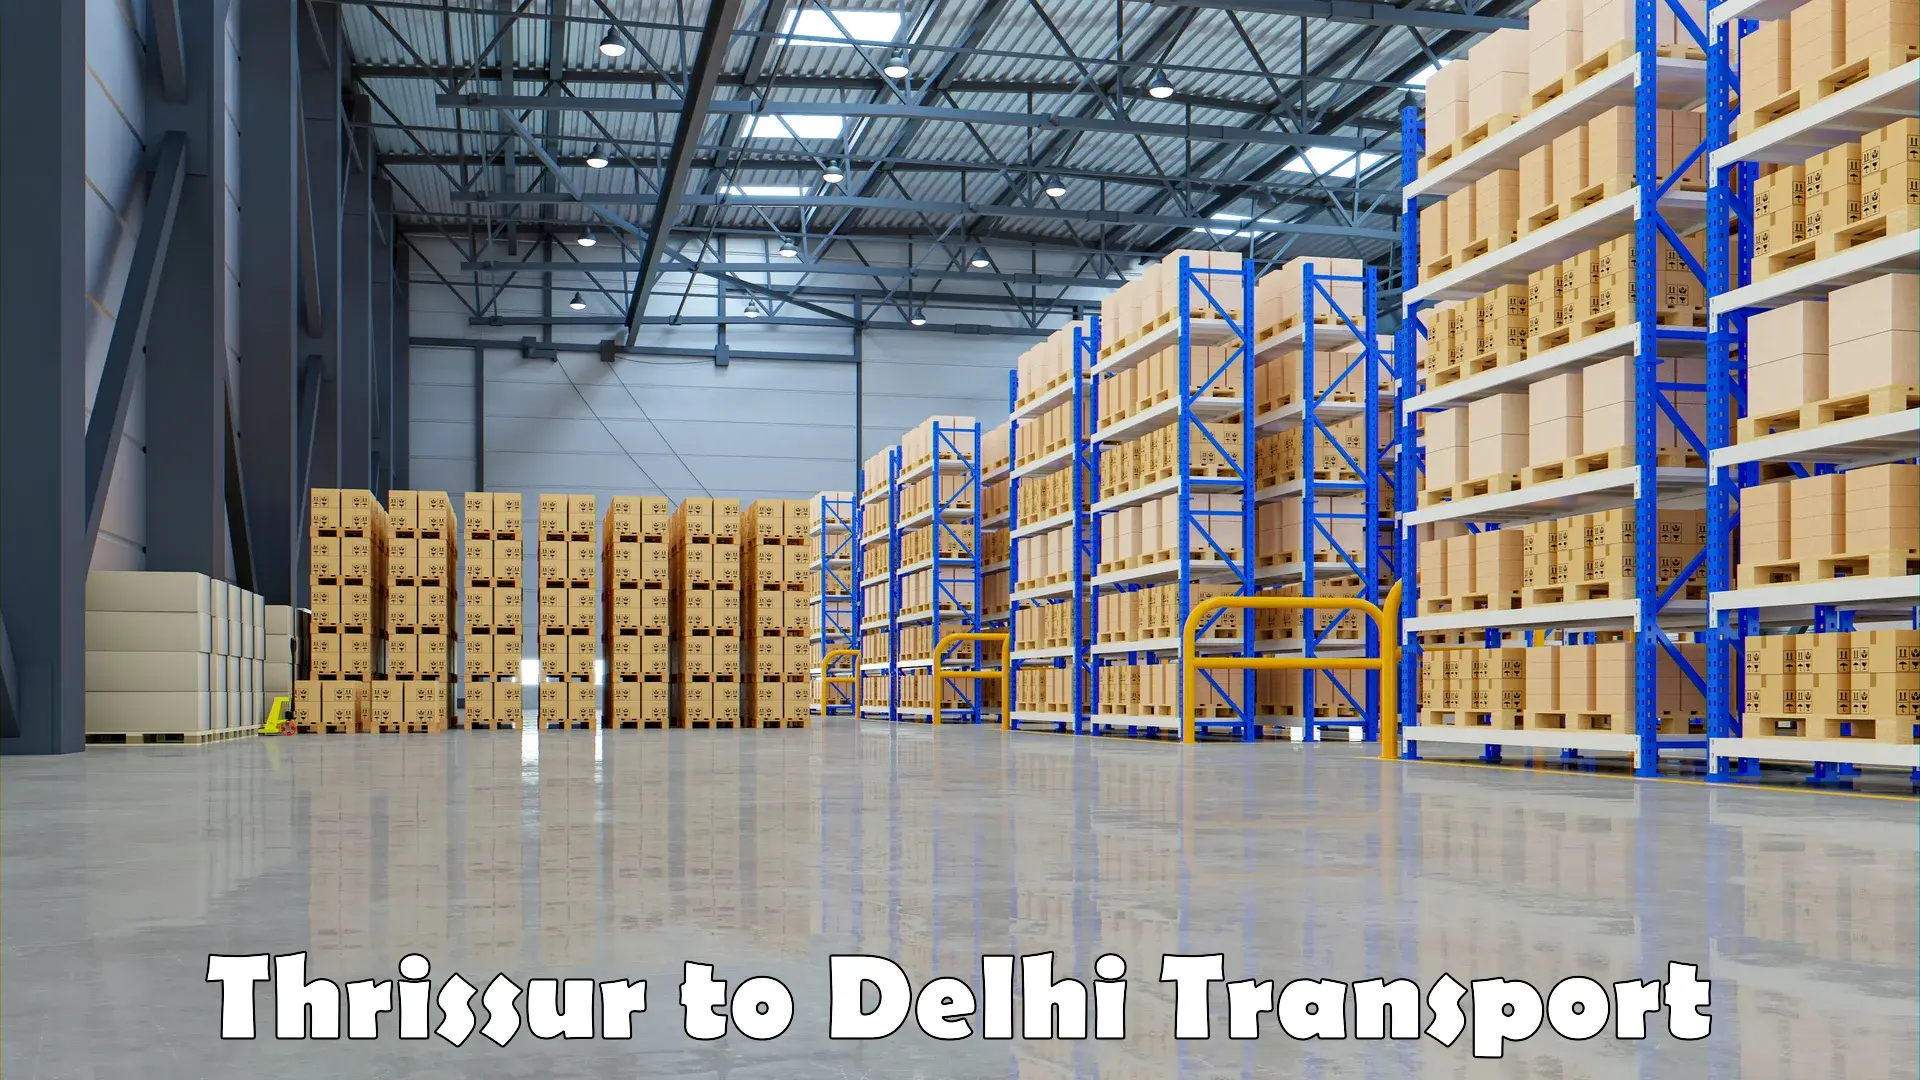 Luggage transport services Thrissur to Delhi